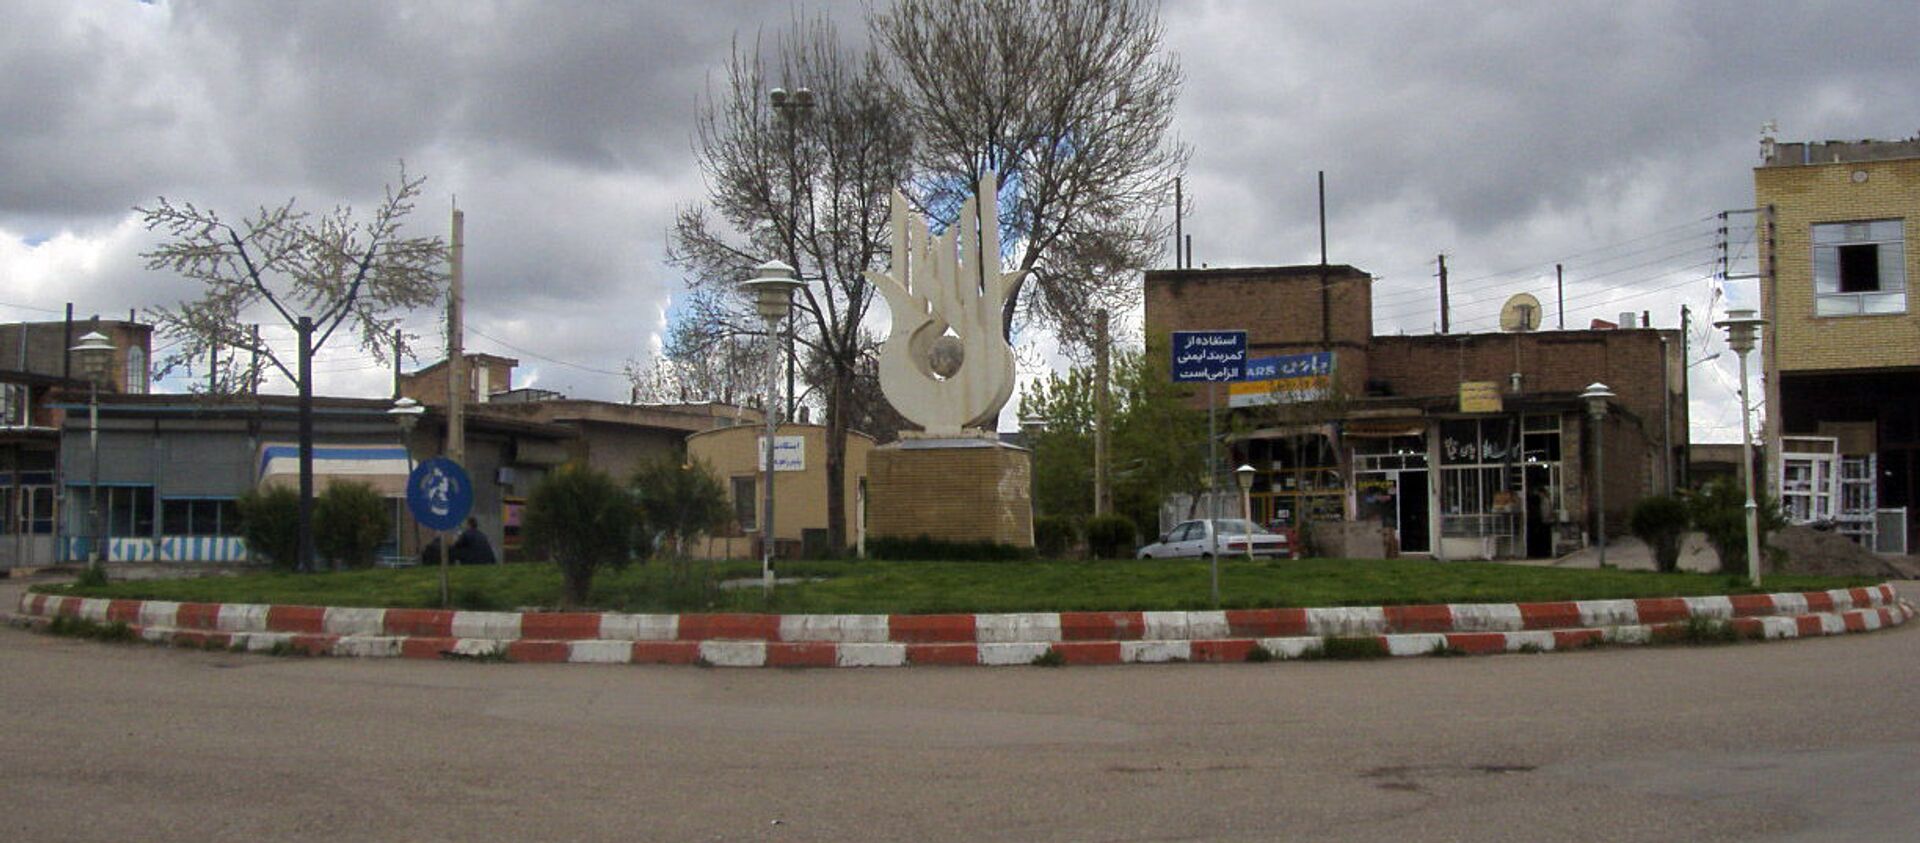 Площадь в городе Эрис, Иран - Sputnik Армения, 1920, 11.04.2021